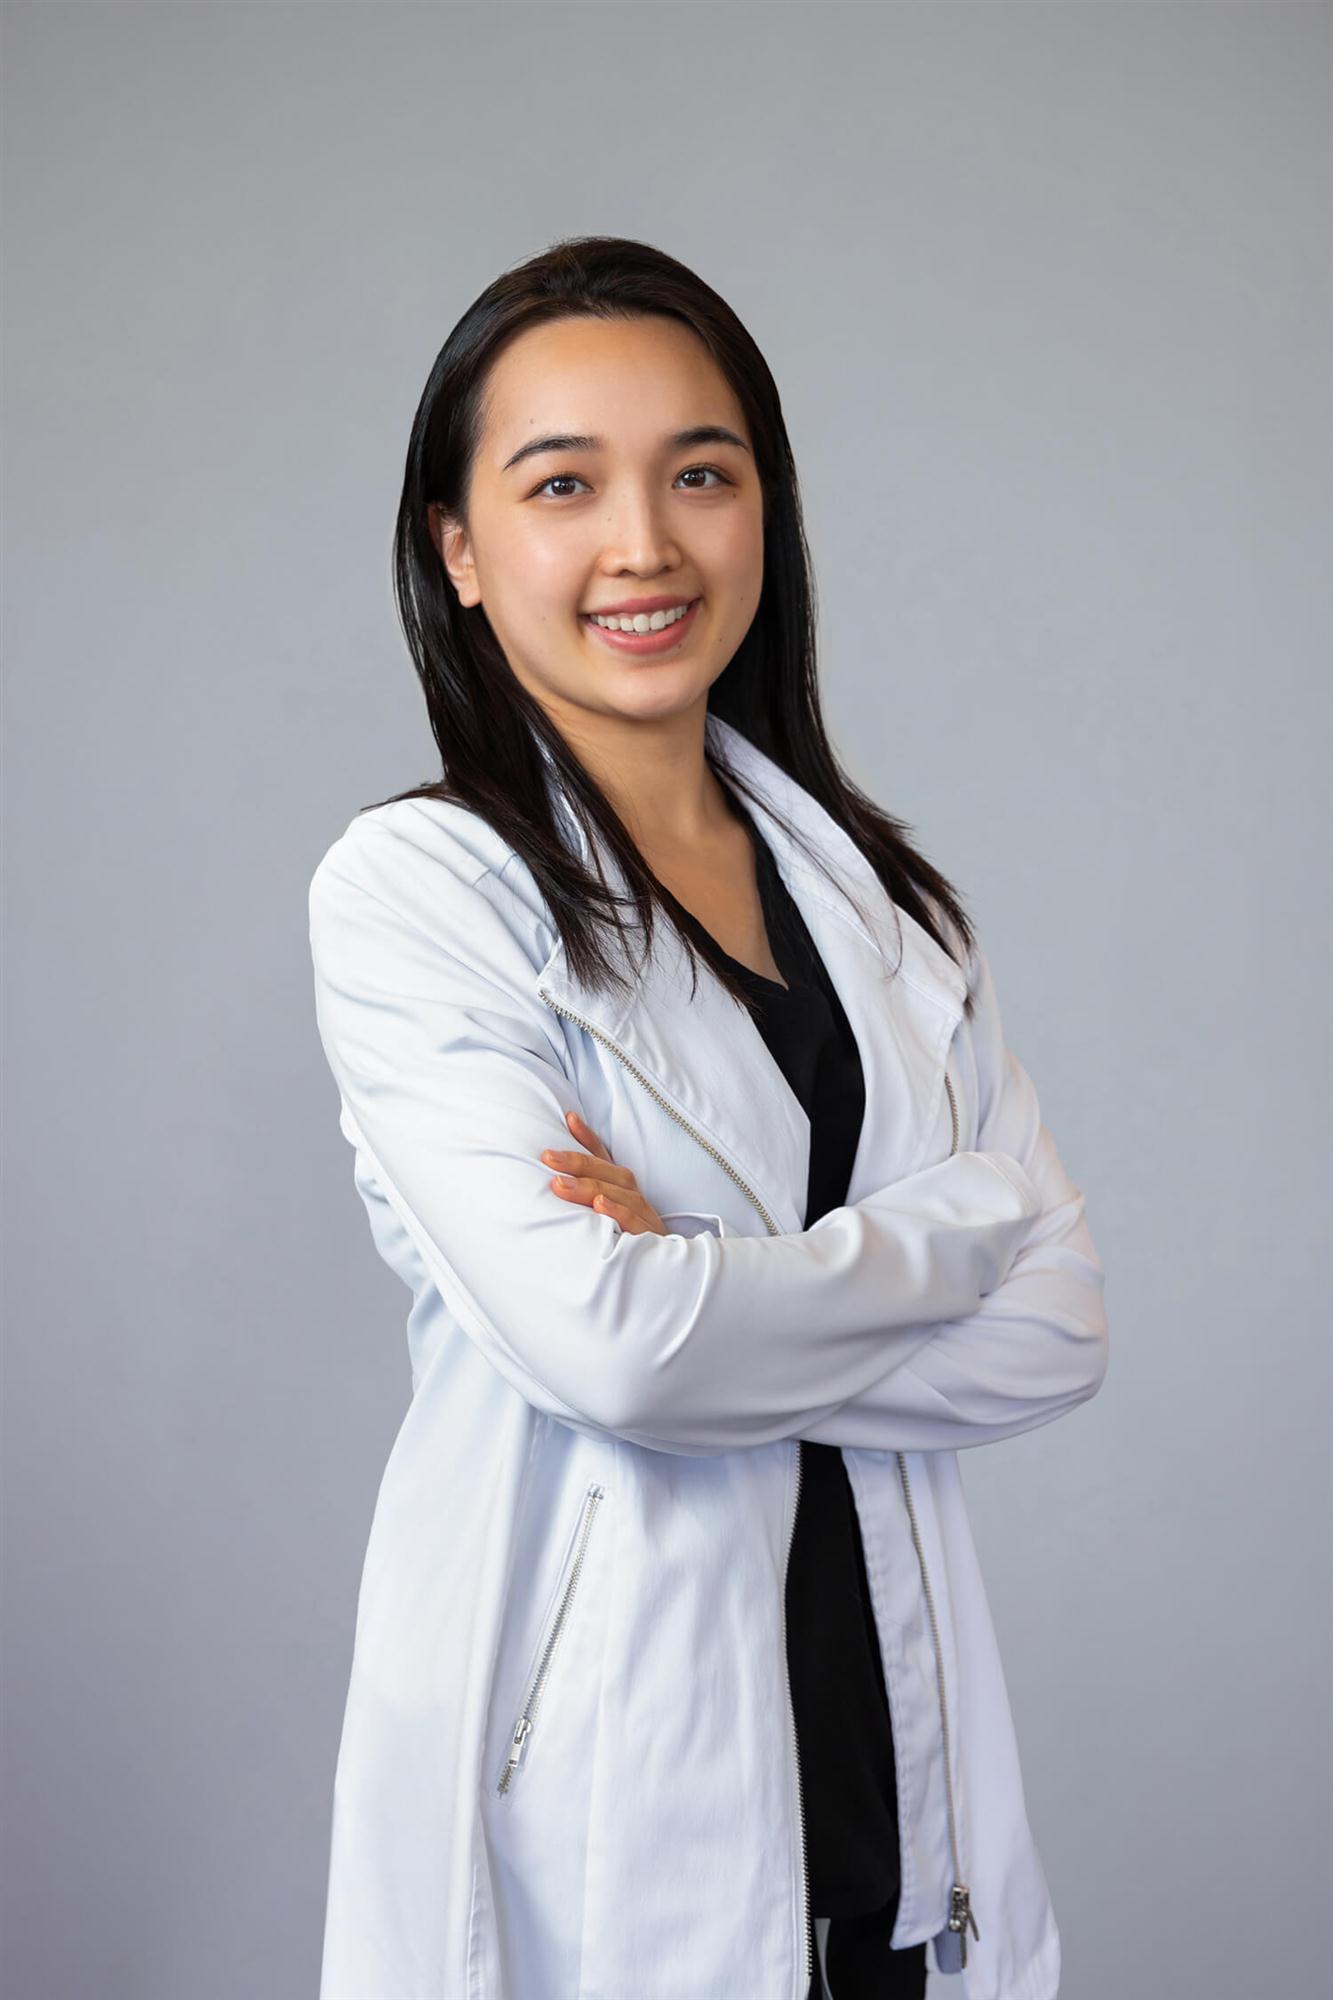 Meet Dr. Zhao of Windsor Family Dental